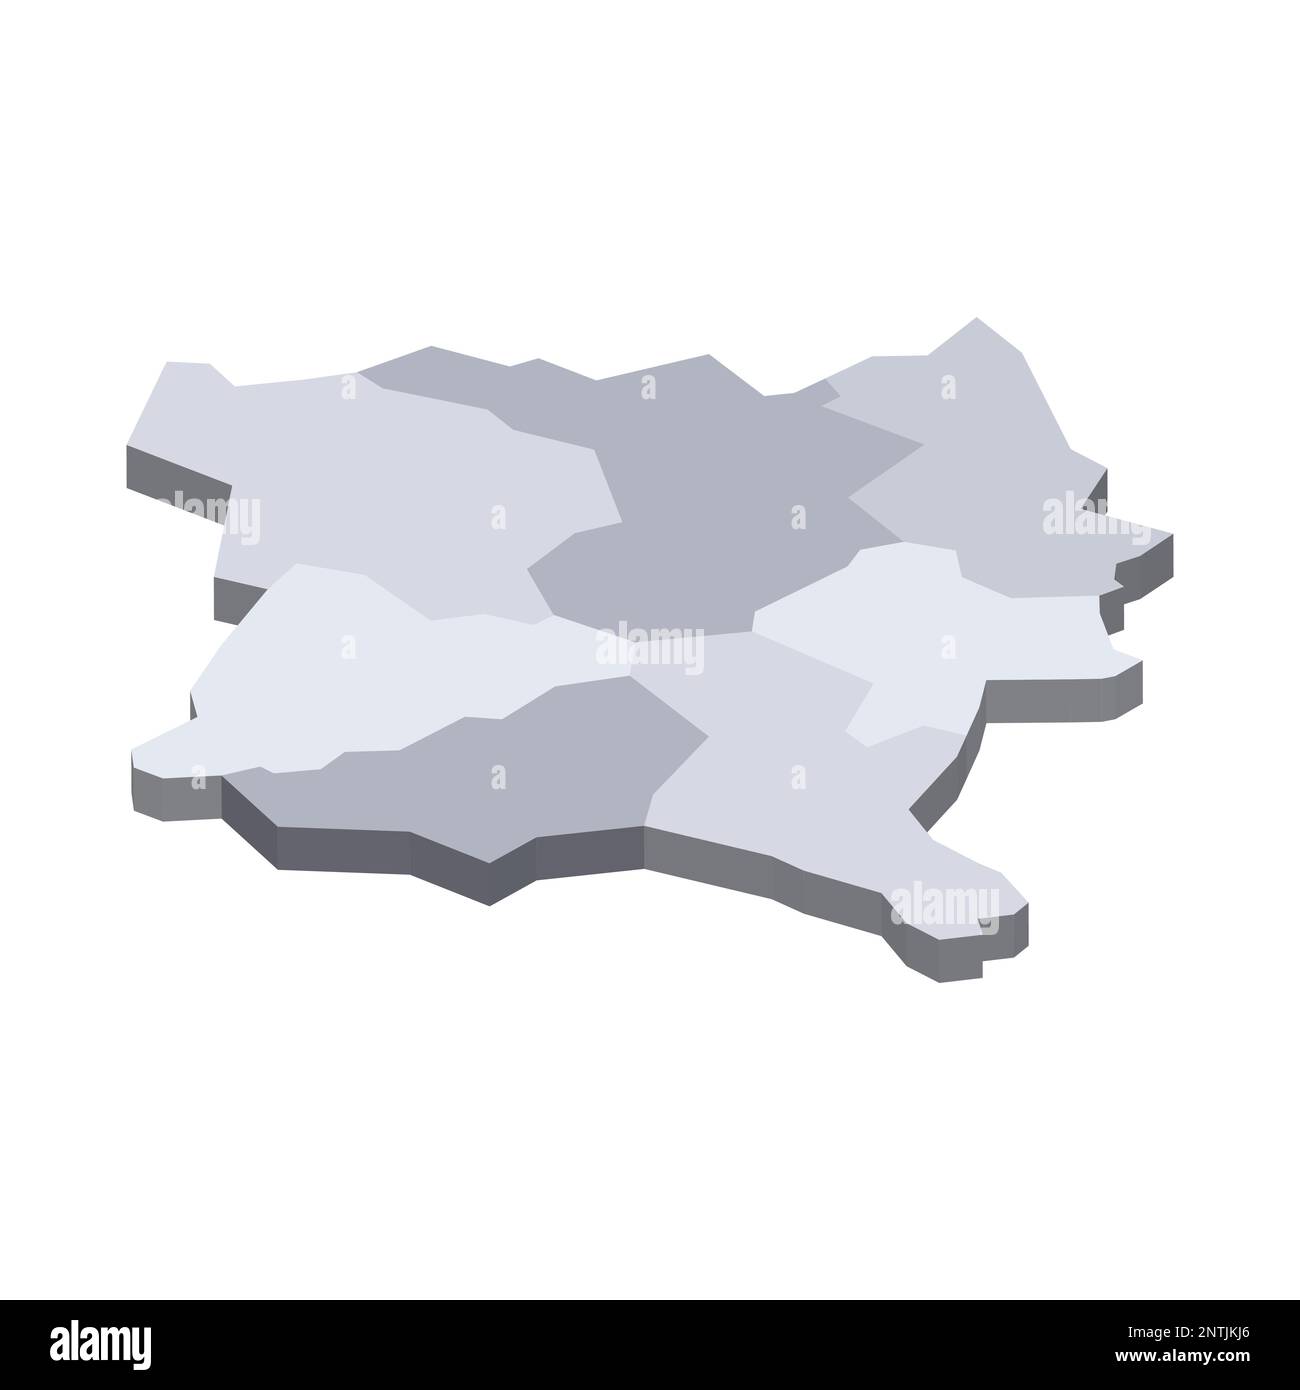 Mappa politica del Kosovo delle divisioni amministrative - distretti. Mappa vettoriale vuota isometrica 3D in tonalità di grigio. Illustrazione Vettoriale